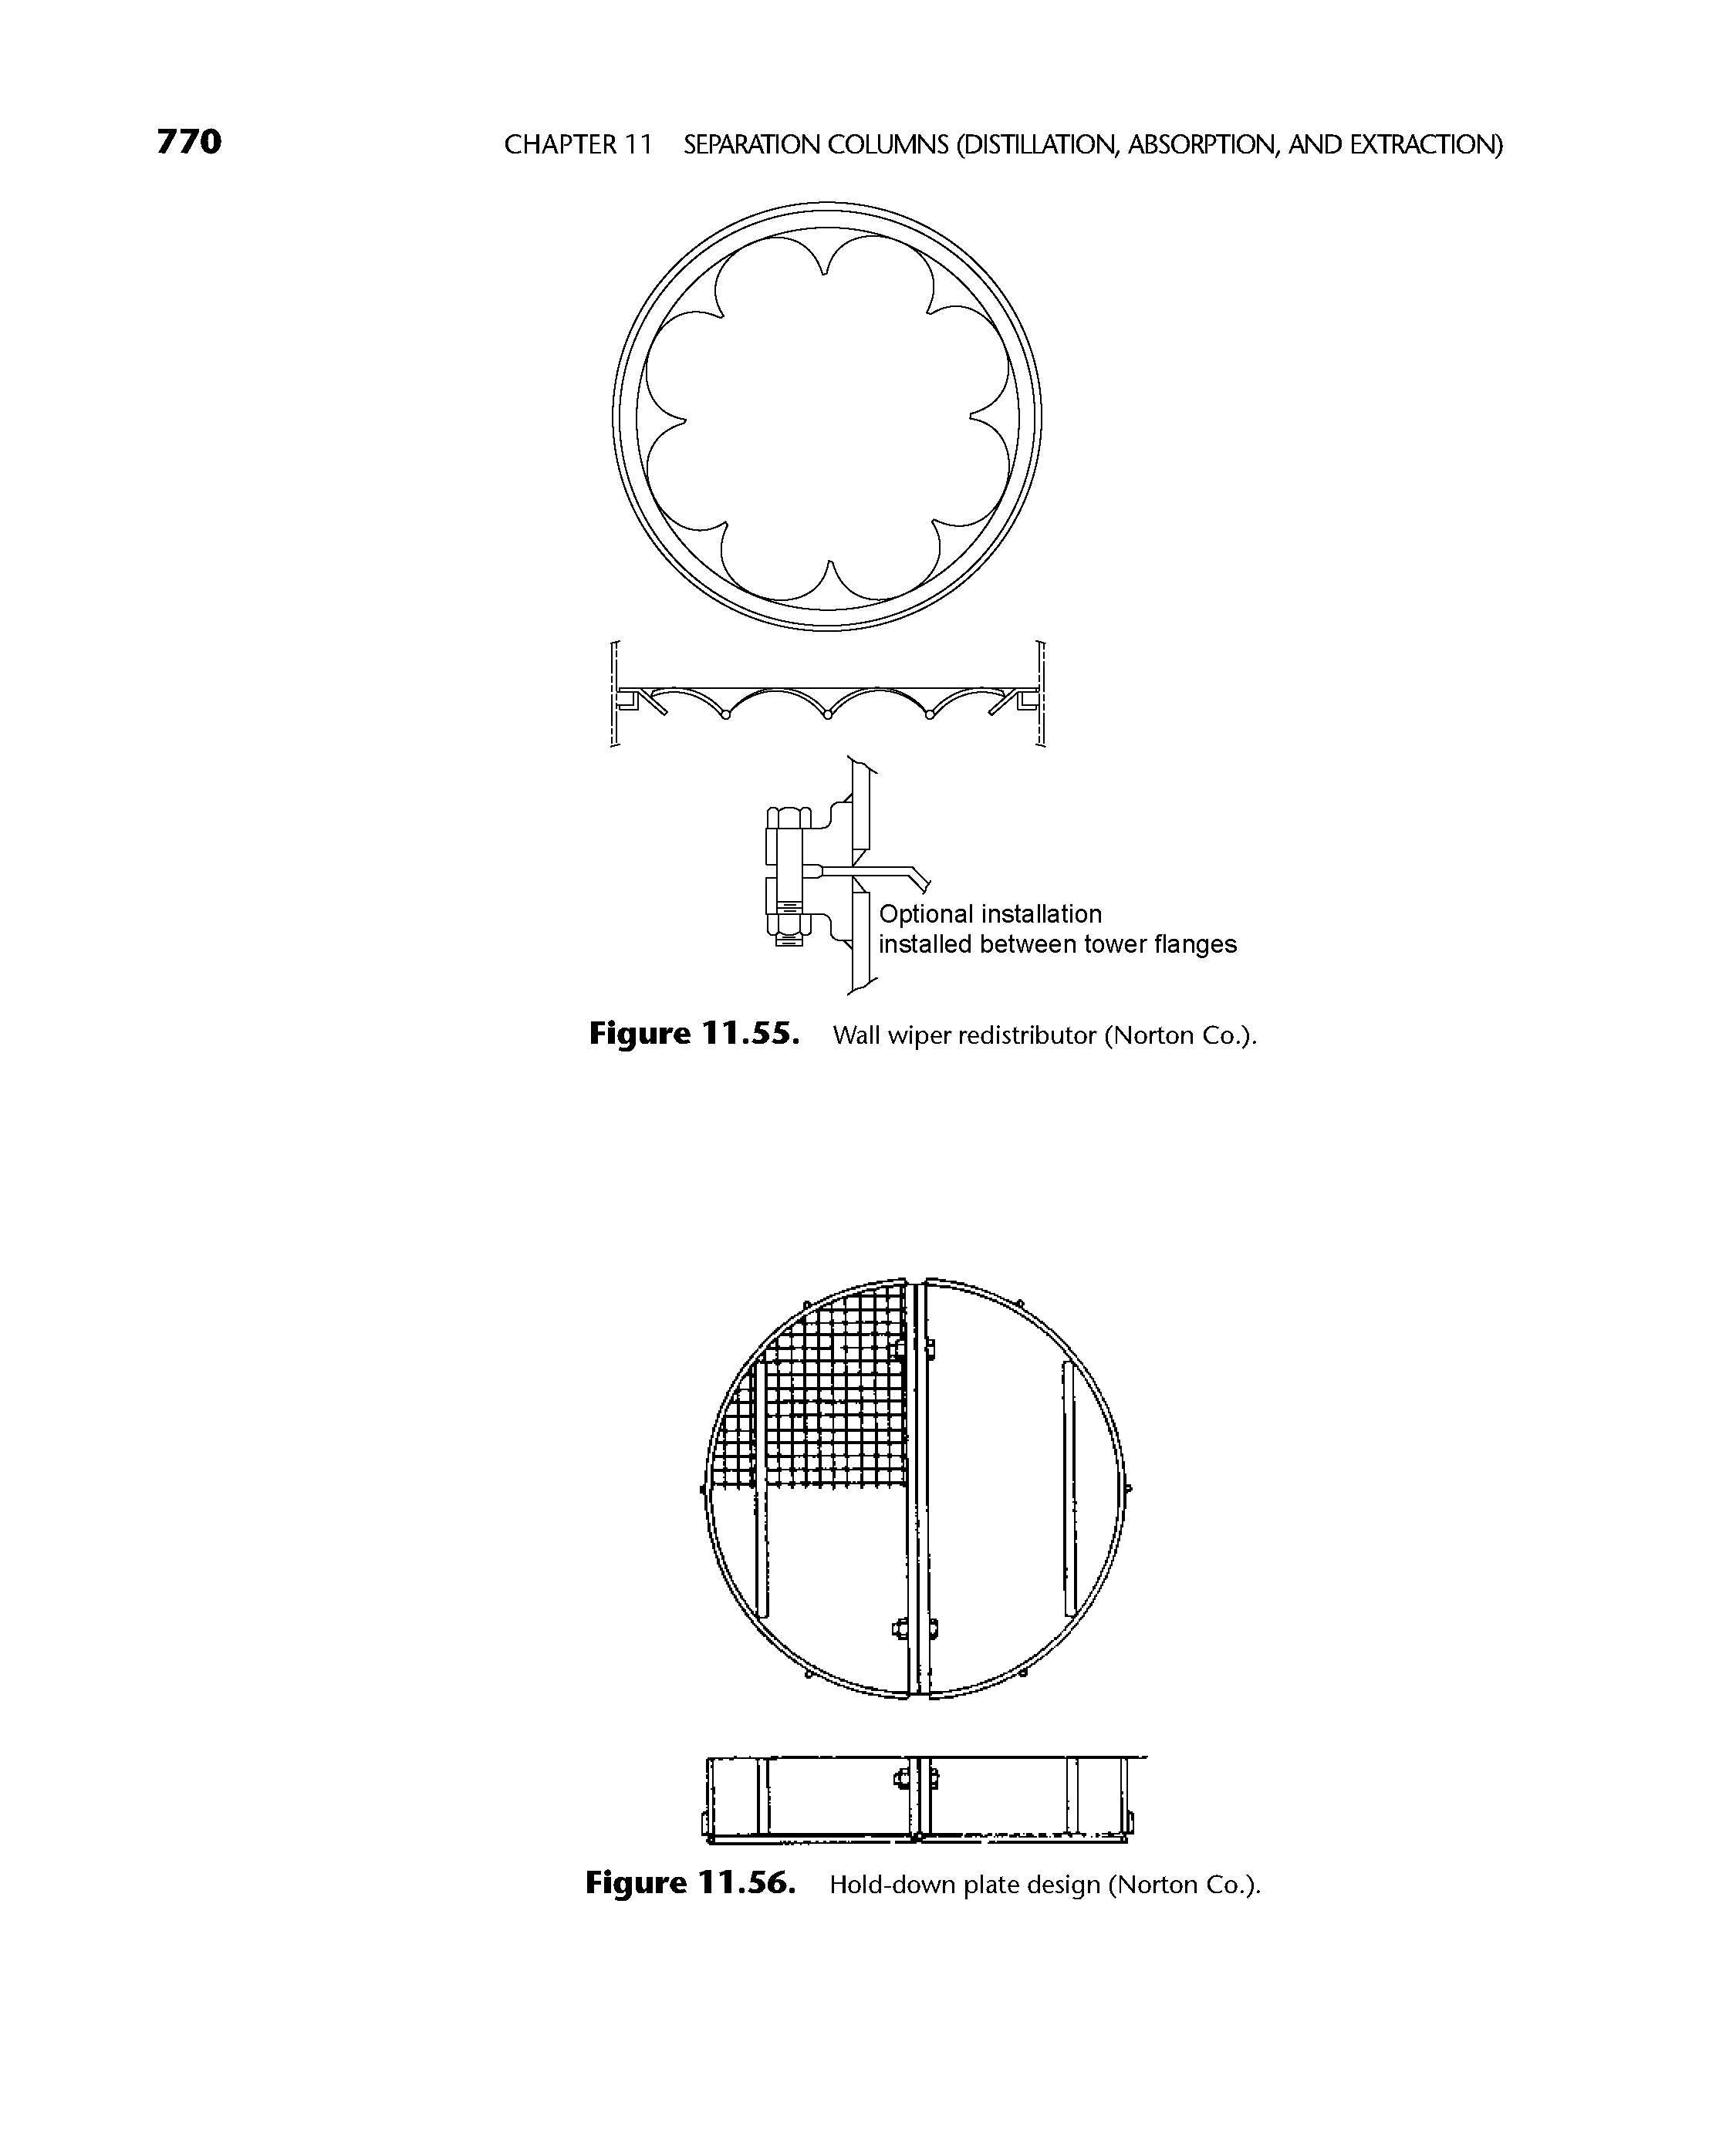 Figure 11.56. Hold-down plate design (Norton Co.).